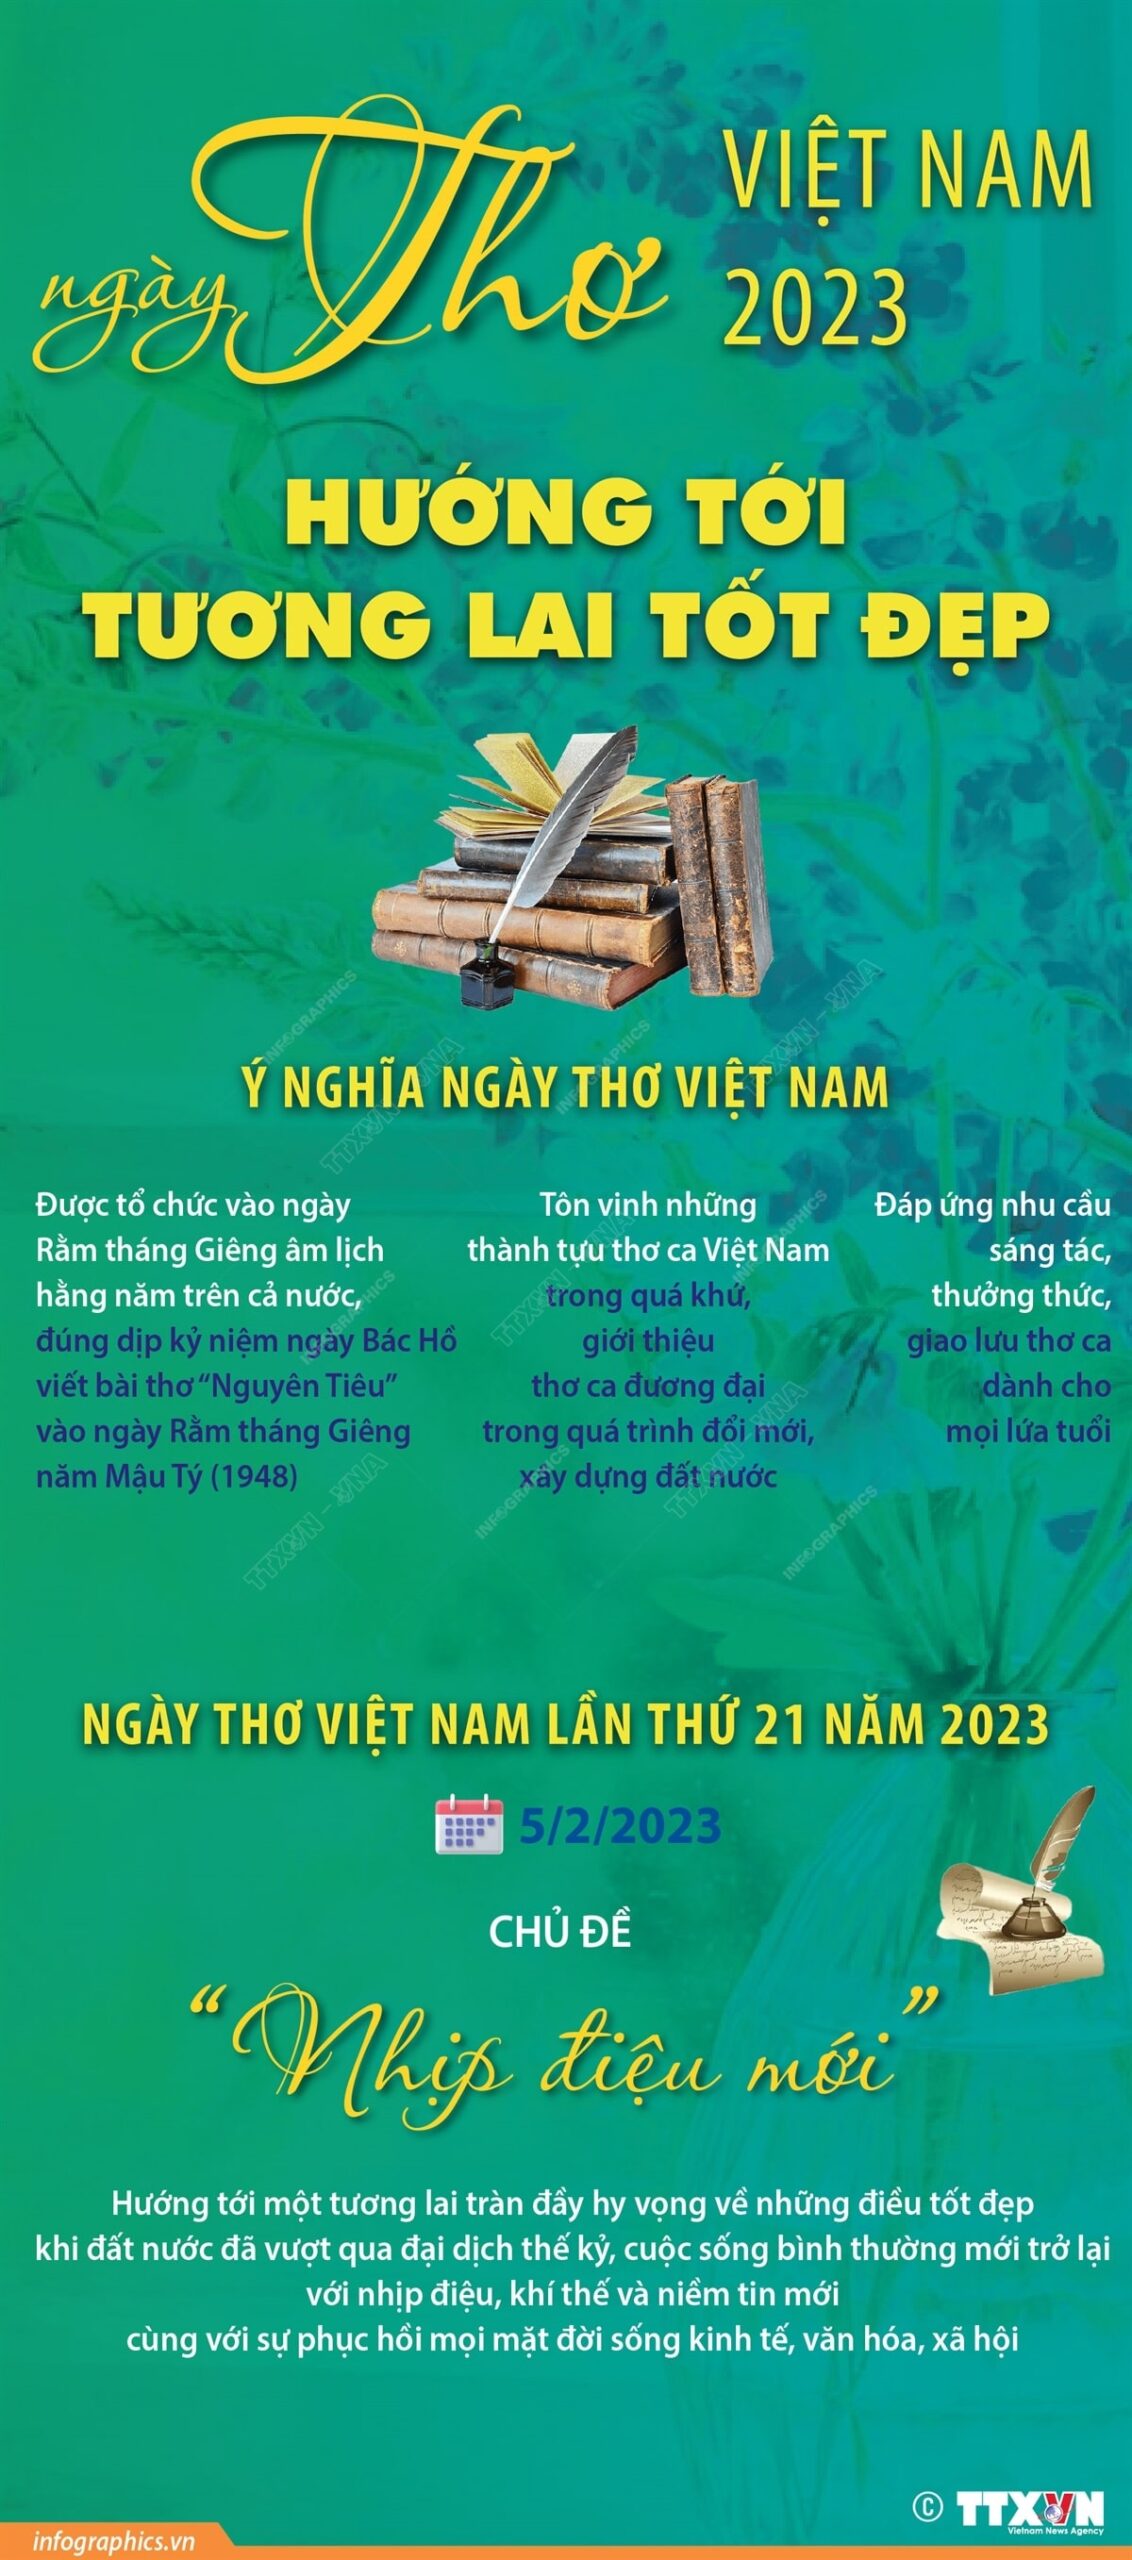 Ngay Tho Viet Nam 2023 min scaled - Ngày Thơ Việt Nam 2023 hướng tới tương lai tốt đẹp